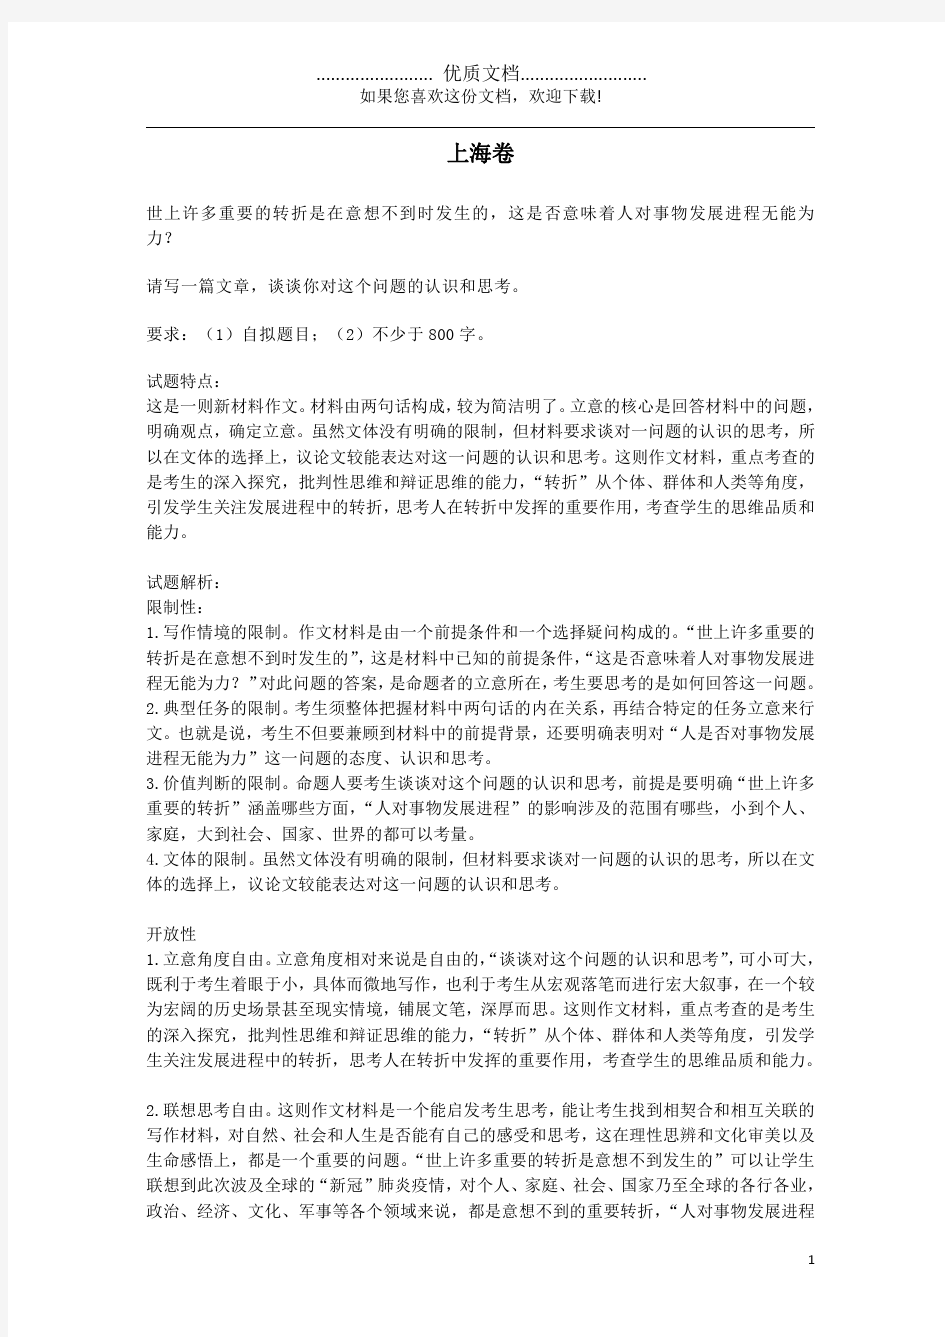 2020年高考语文作文题目素材(上海卷,含解析)